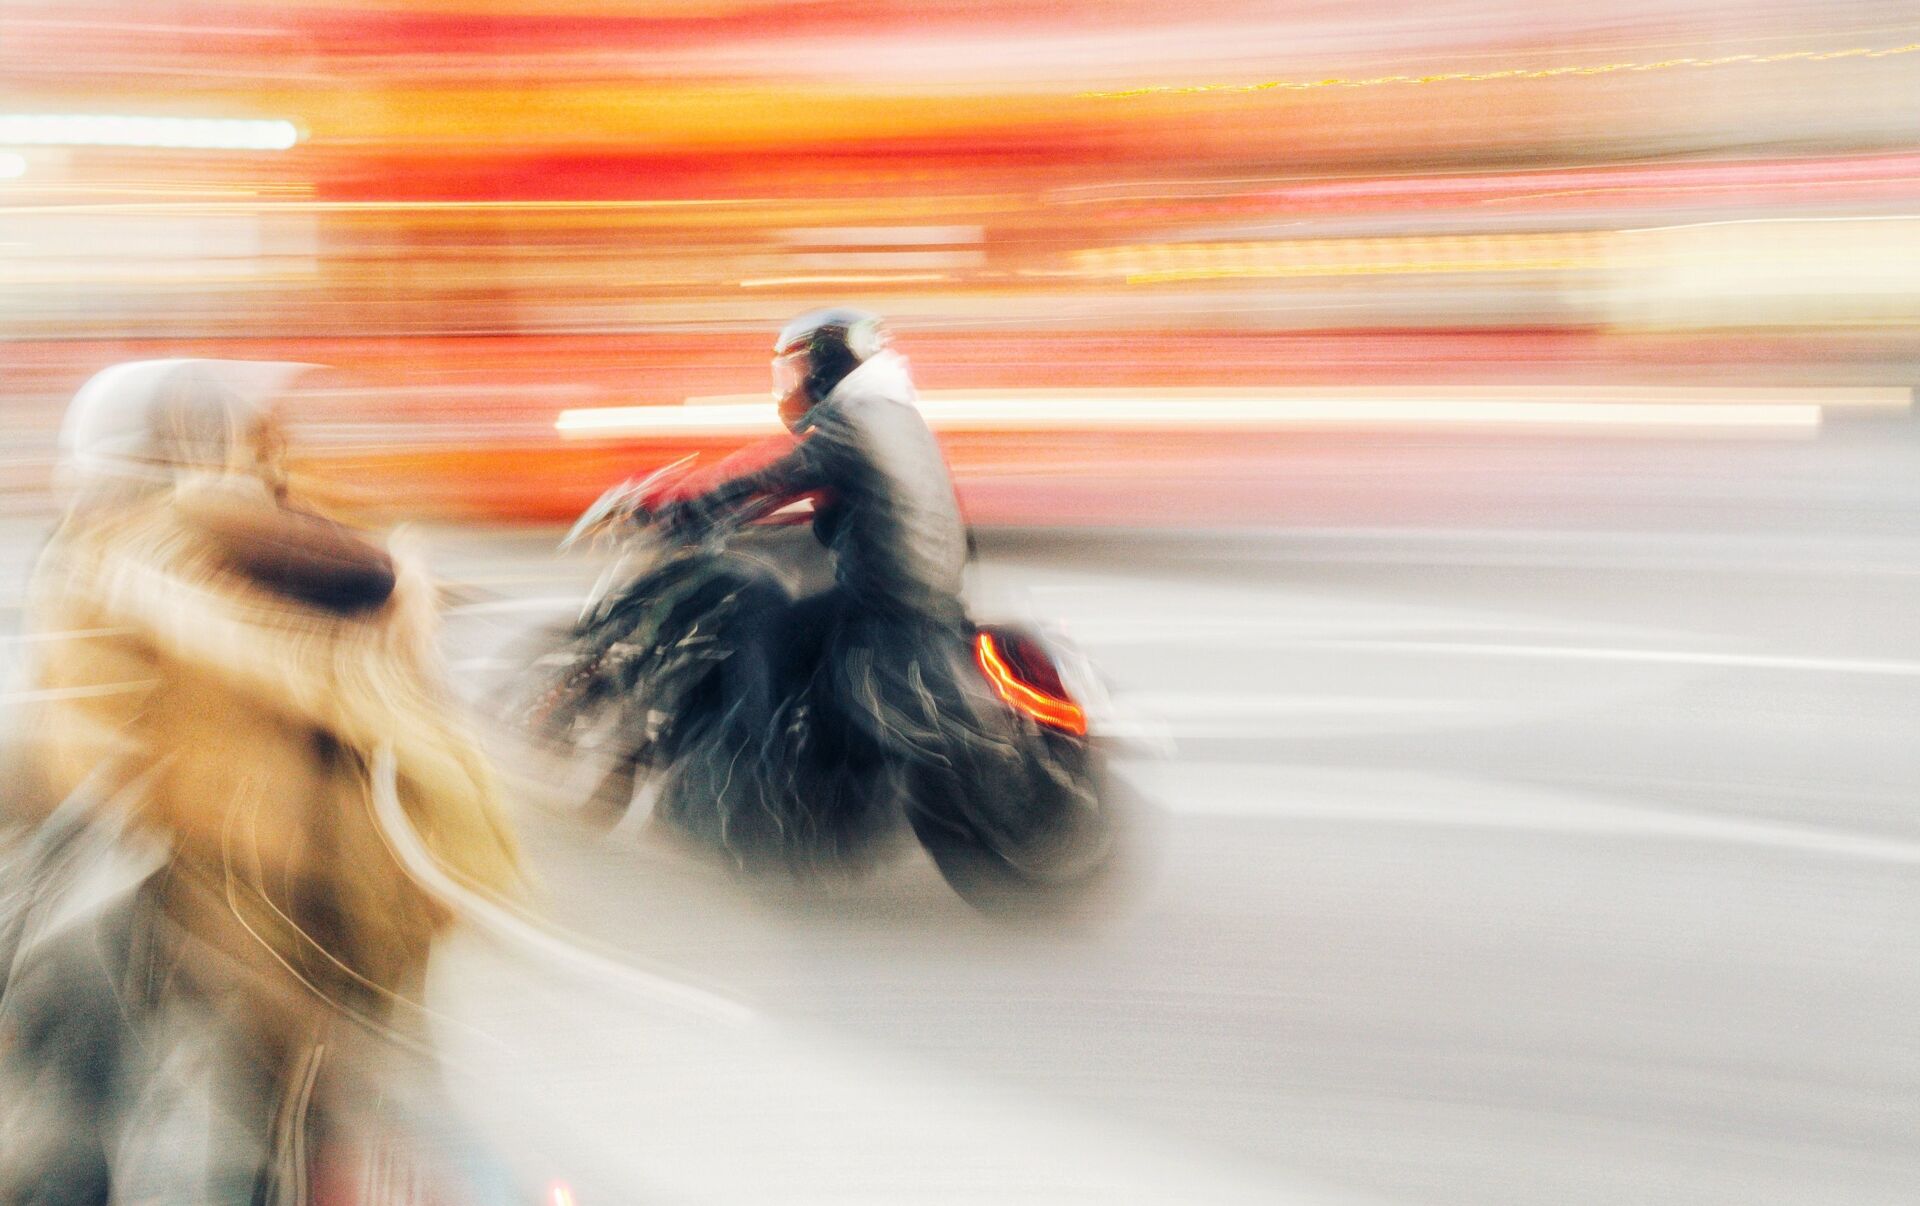 Тема догнать. Статусы мотоциклистов. Скорость мотоцикл конь картинка женщина.